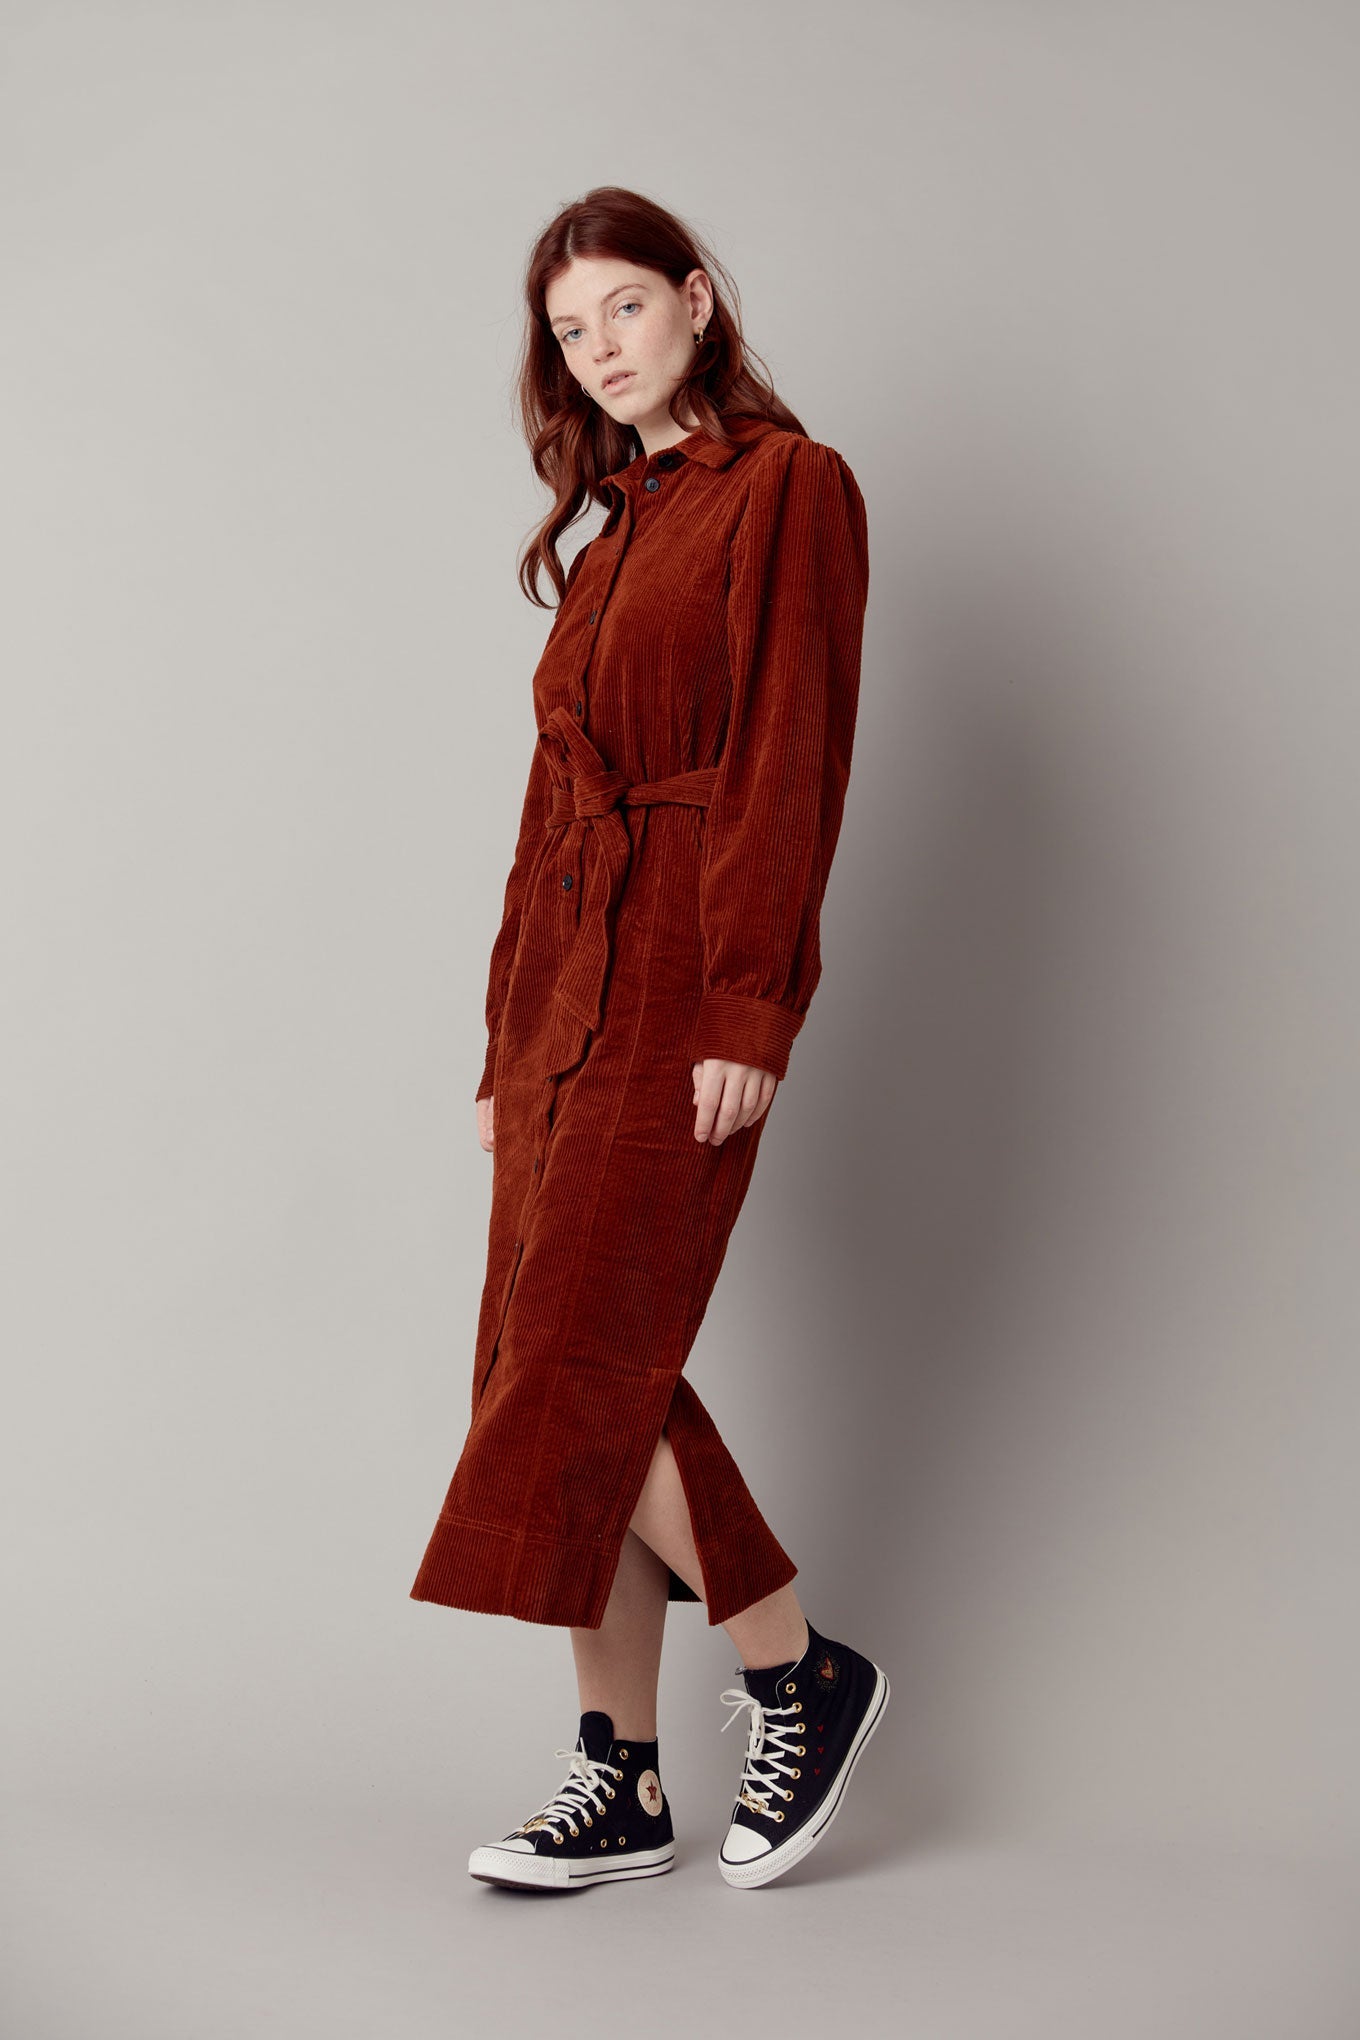 Robe longue en velours côtelé rouge-marron REINA en coton 100% biologique de Komodo